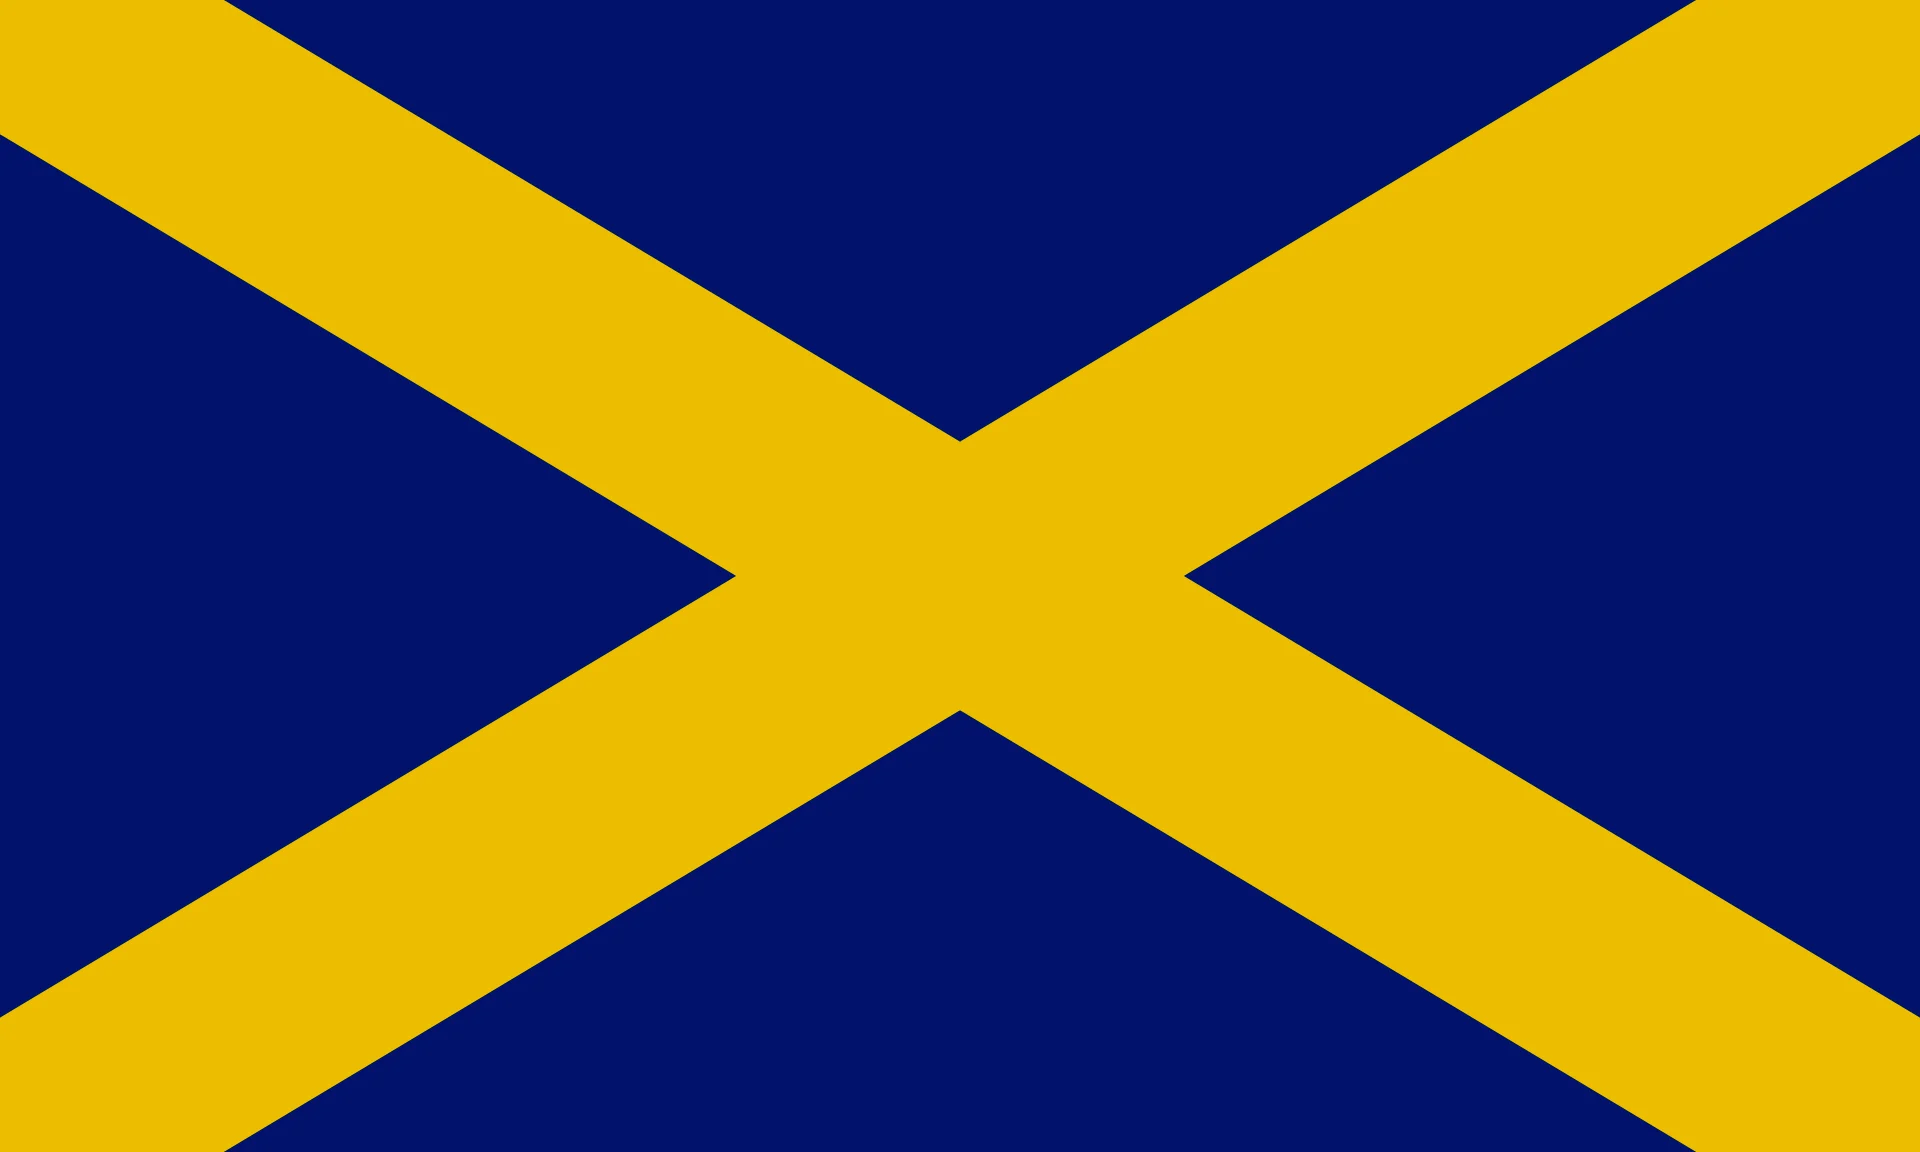 这是在英国旗帜研究所注册的默西亚王国国旗，为了避免和圣奥尔本斯市旗冲突采用了暗色调。历史上的默西亚王国没有旗帜流传下来，大概也不存在统一的旗帜